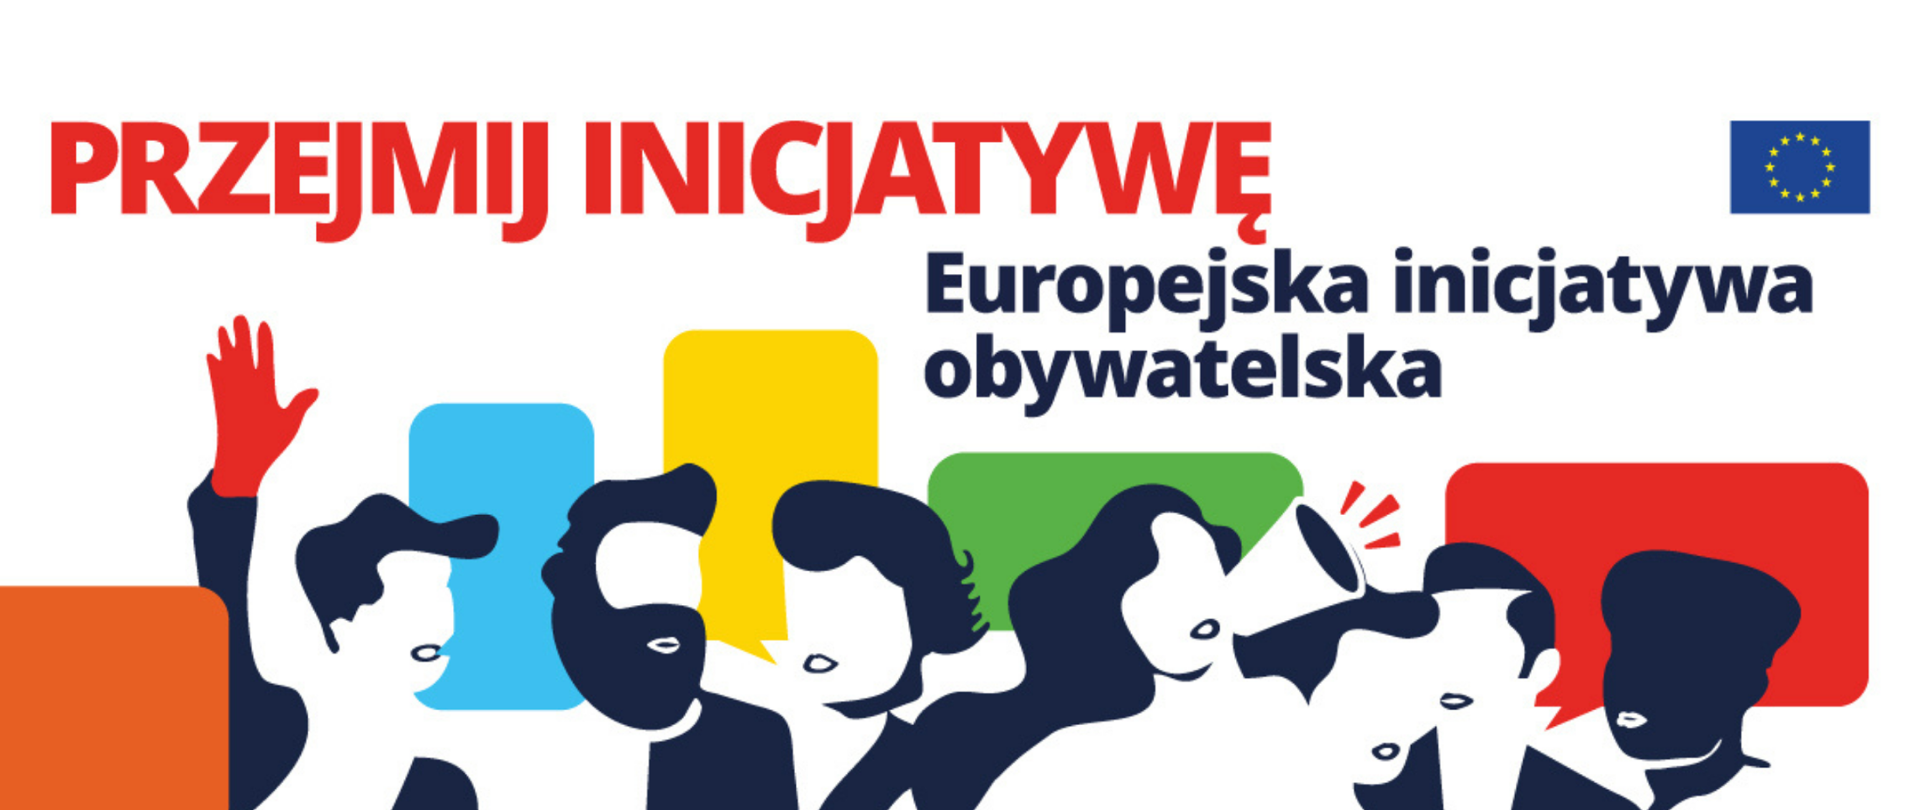 Kolorowa grafika wektorowa z hasłem Przejmij inicjatywę - Europejska inicjatywa obywatelska.